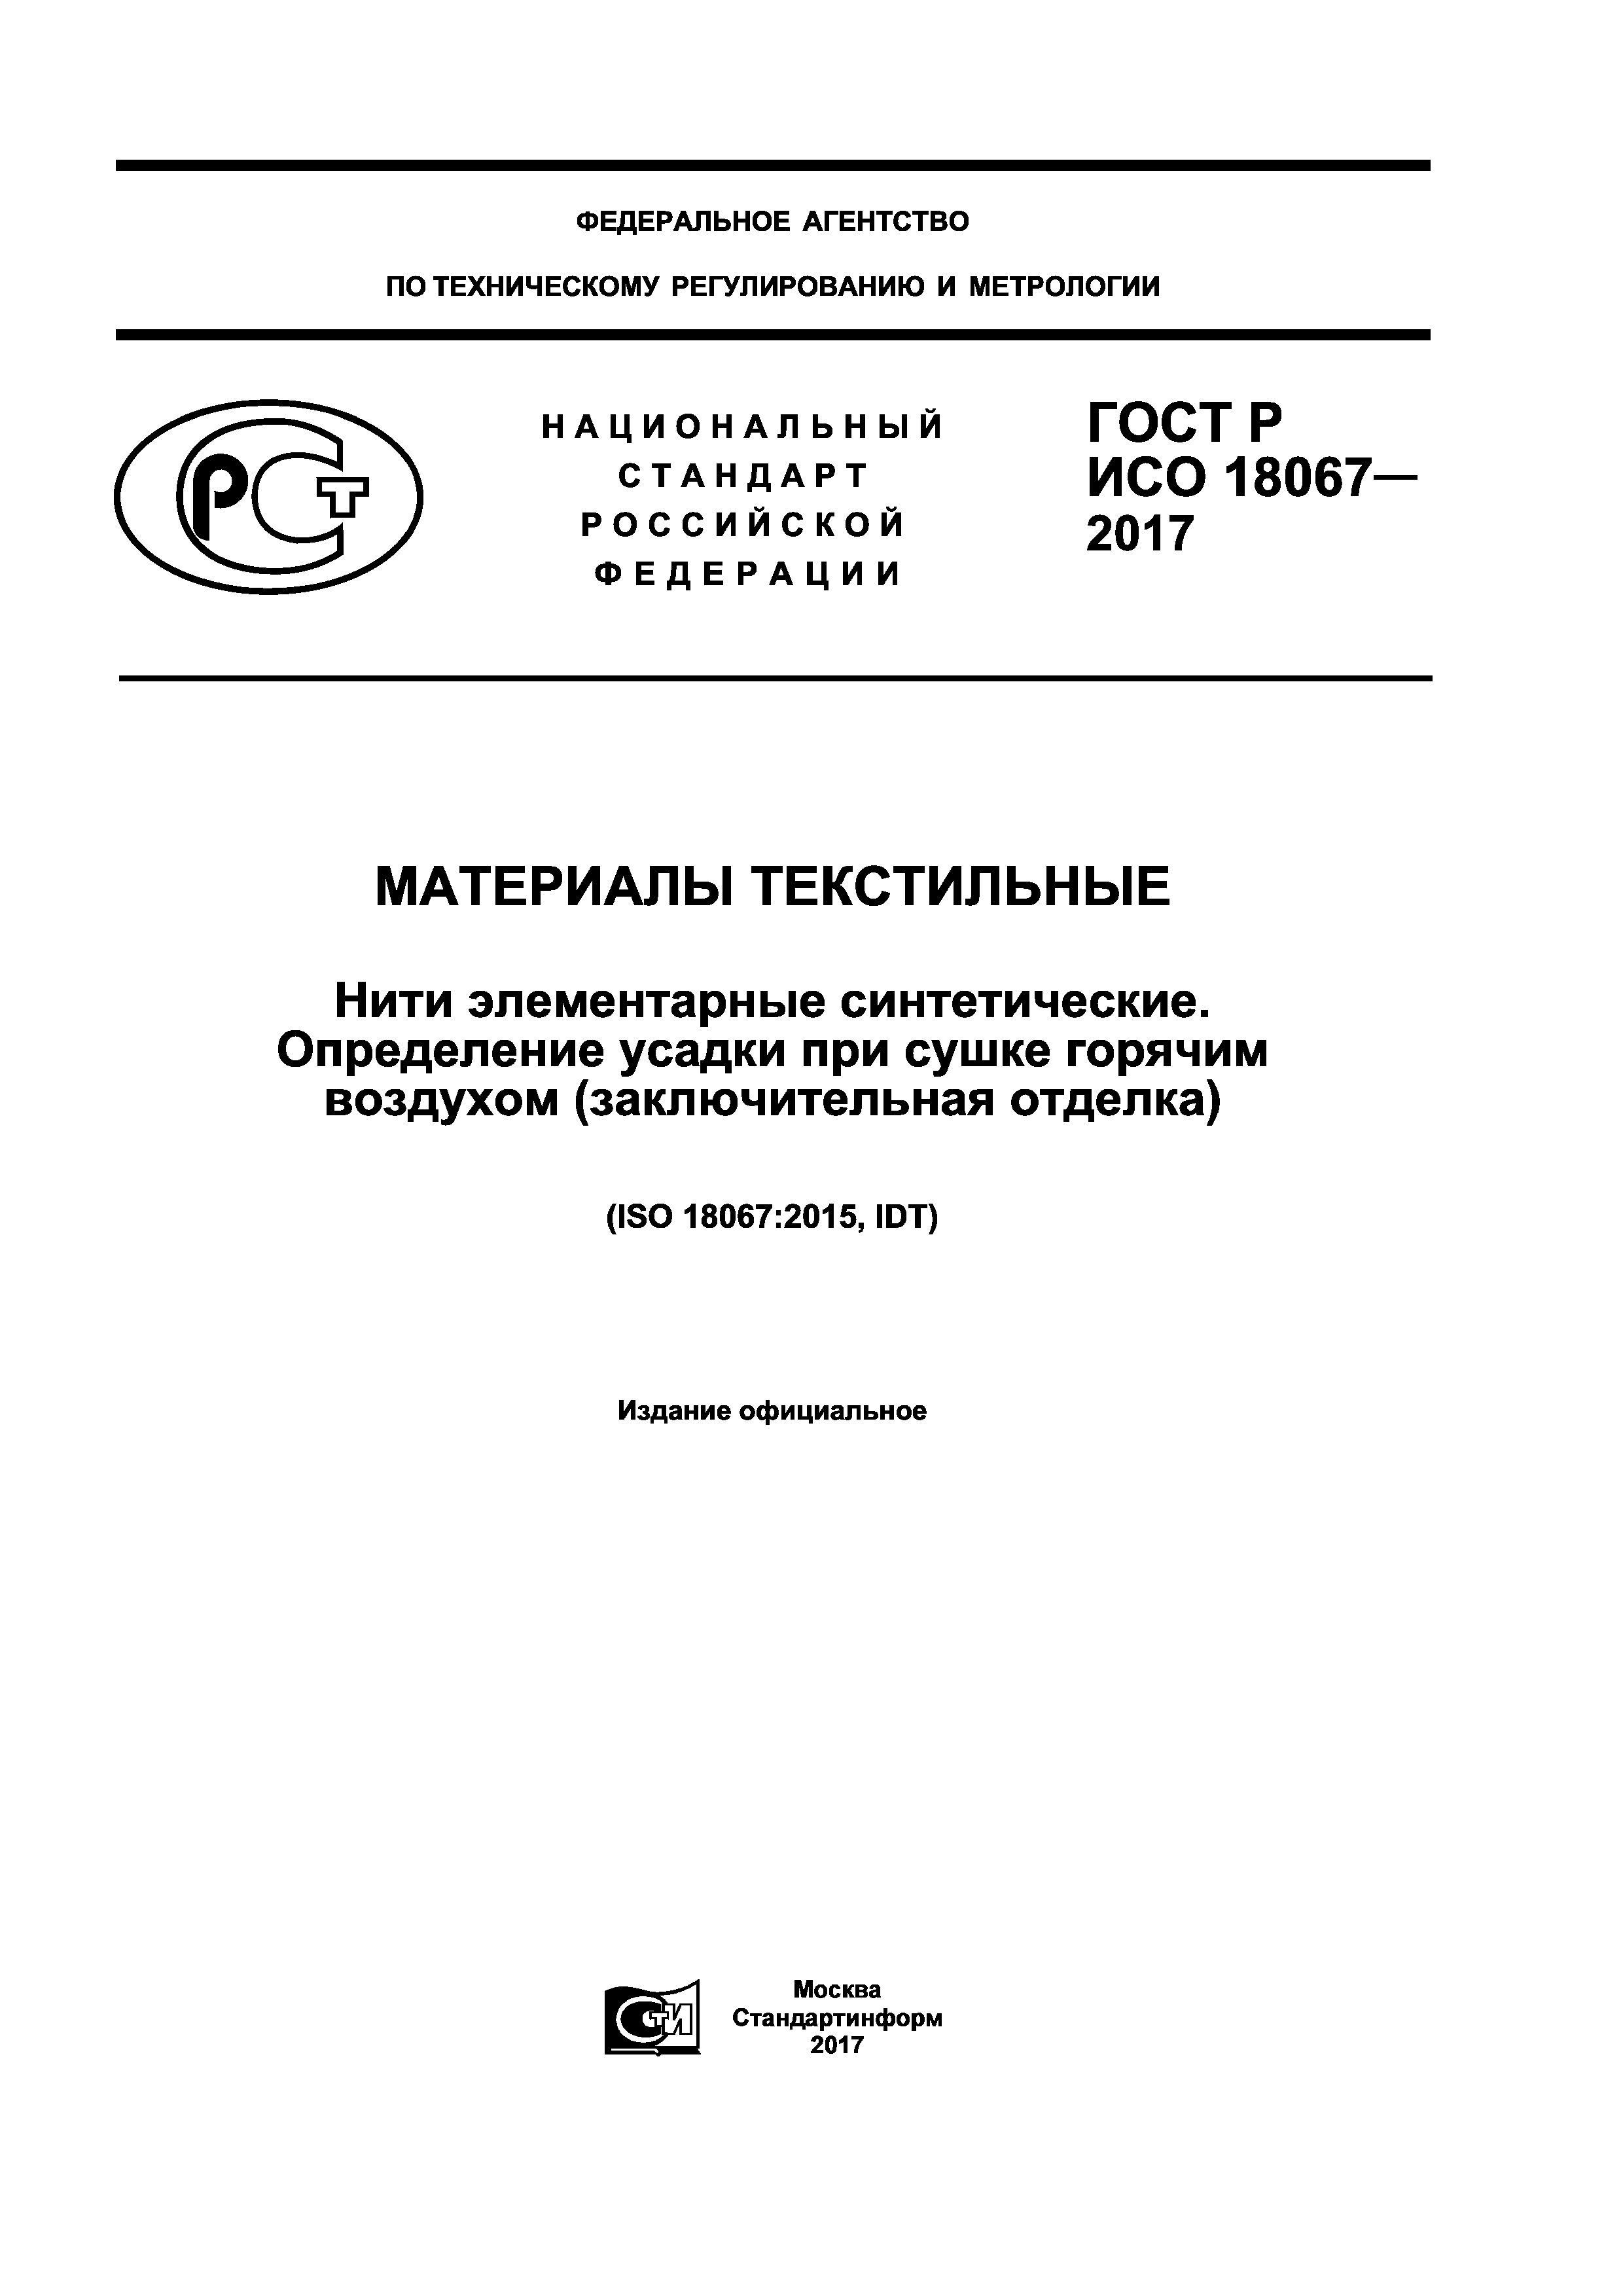 ГОСТ Р ИСО 18067-2017